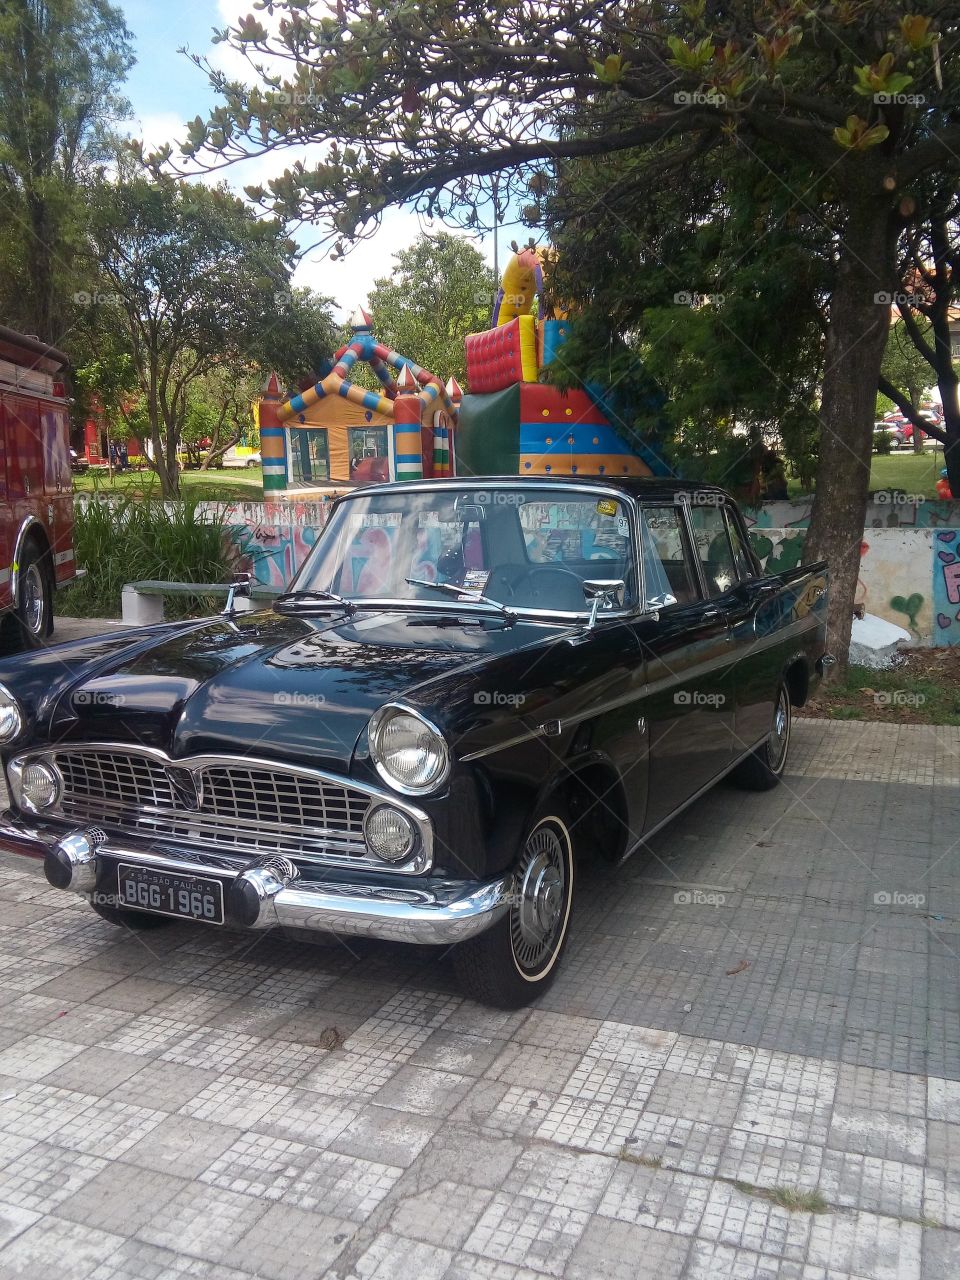 Exposiçao carro antigo no parque Tiquatira